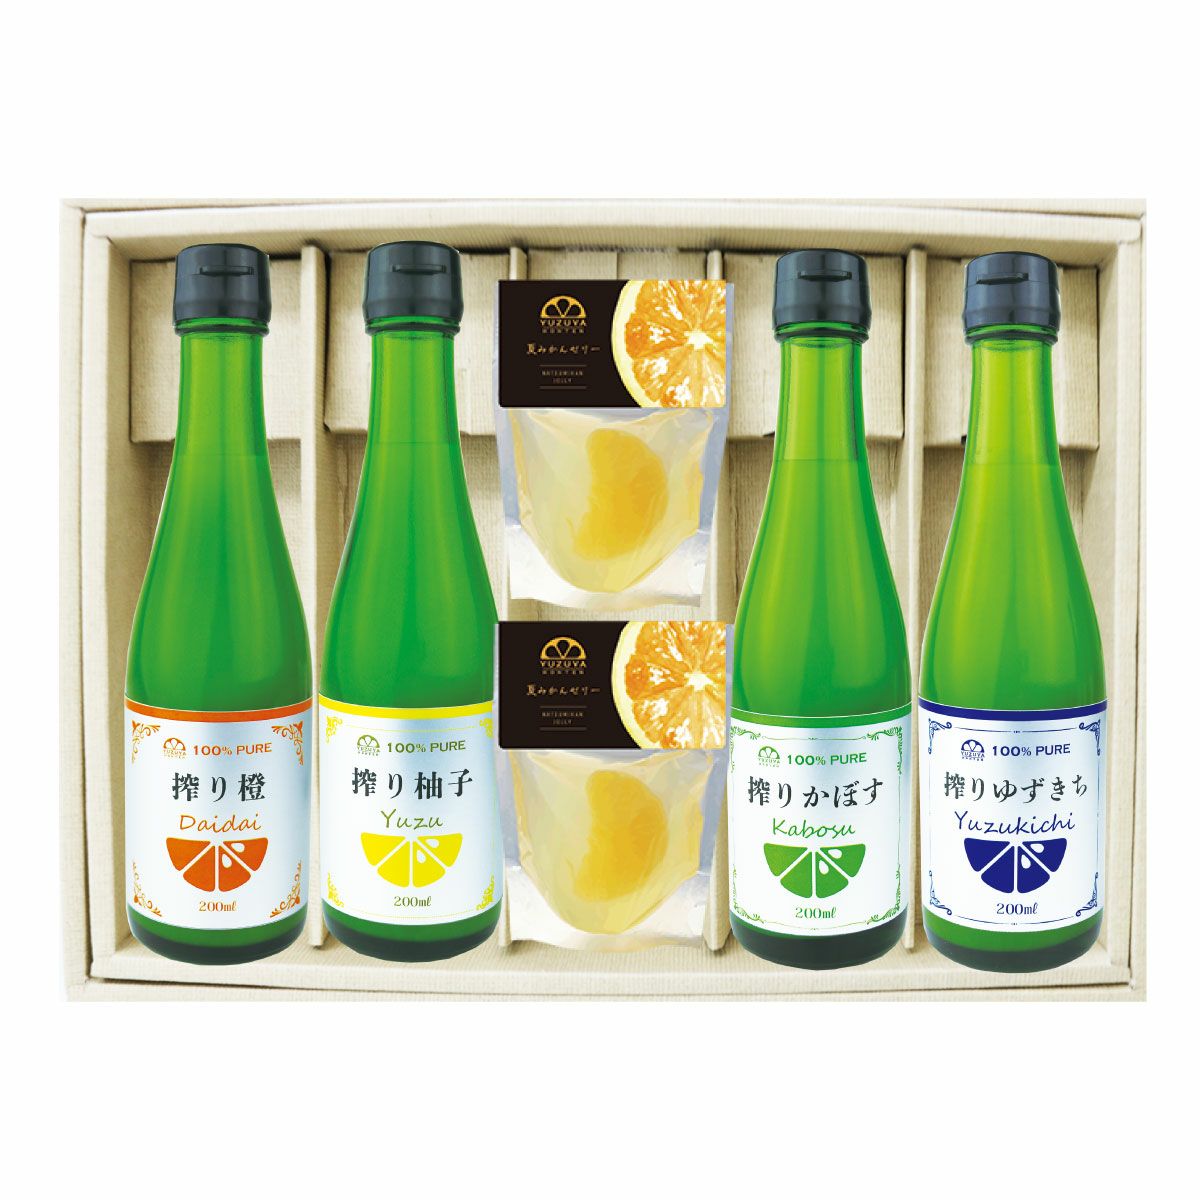 7,990円柚子酢6升☆ゆず果汁☆ 高知県産